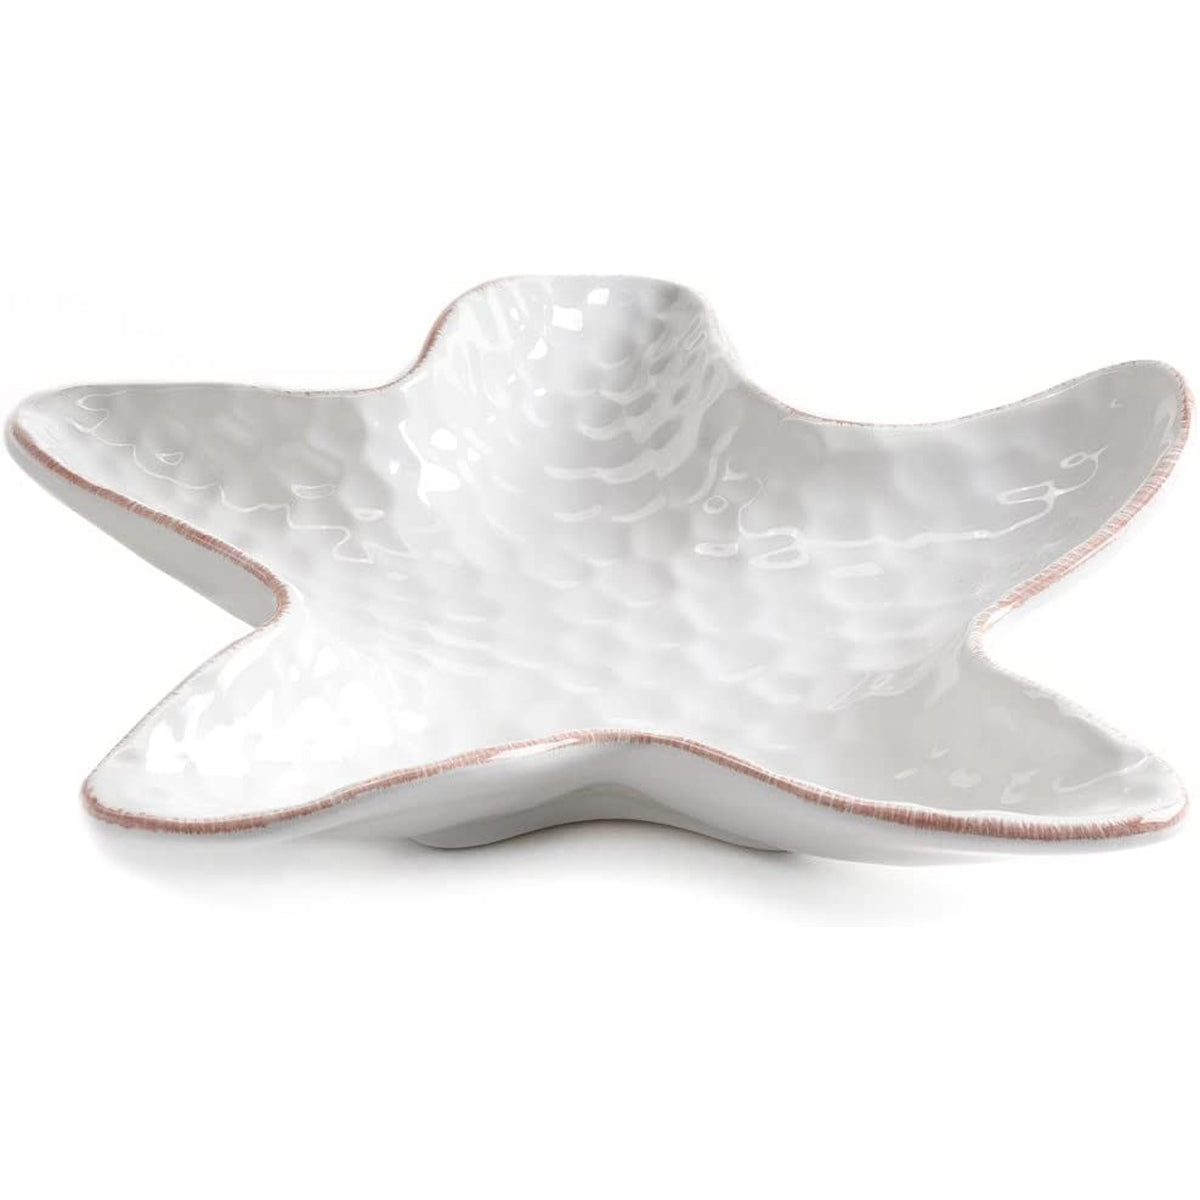 White Starfish Plate